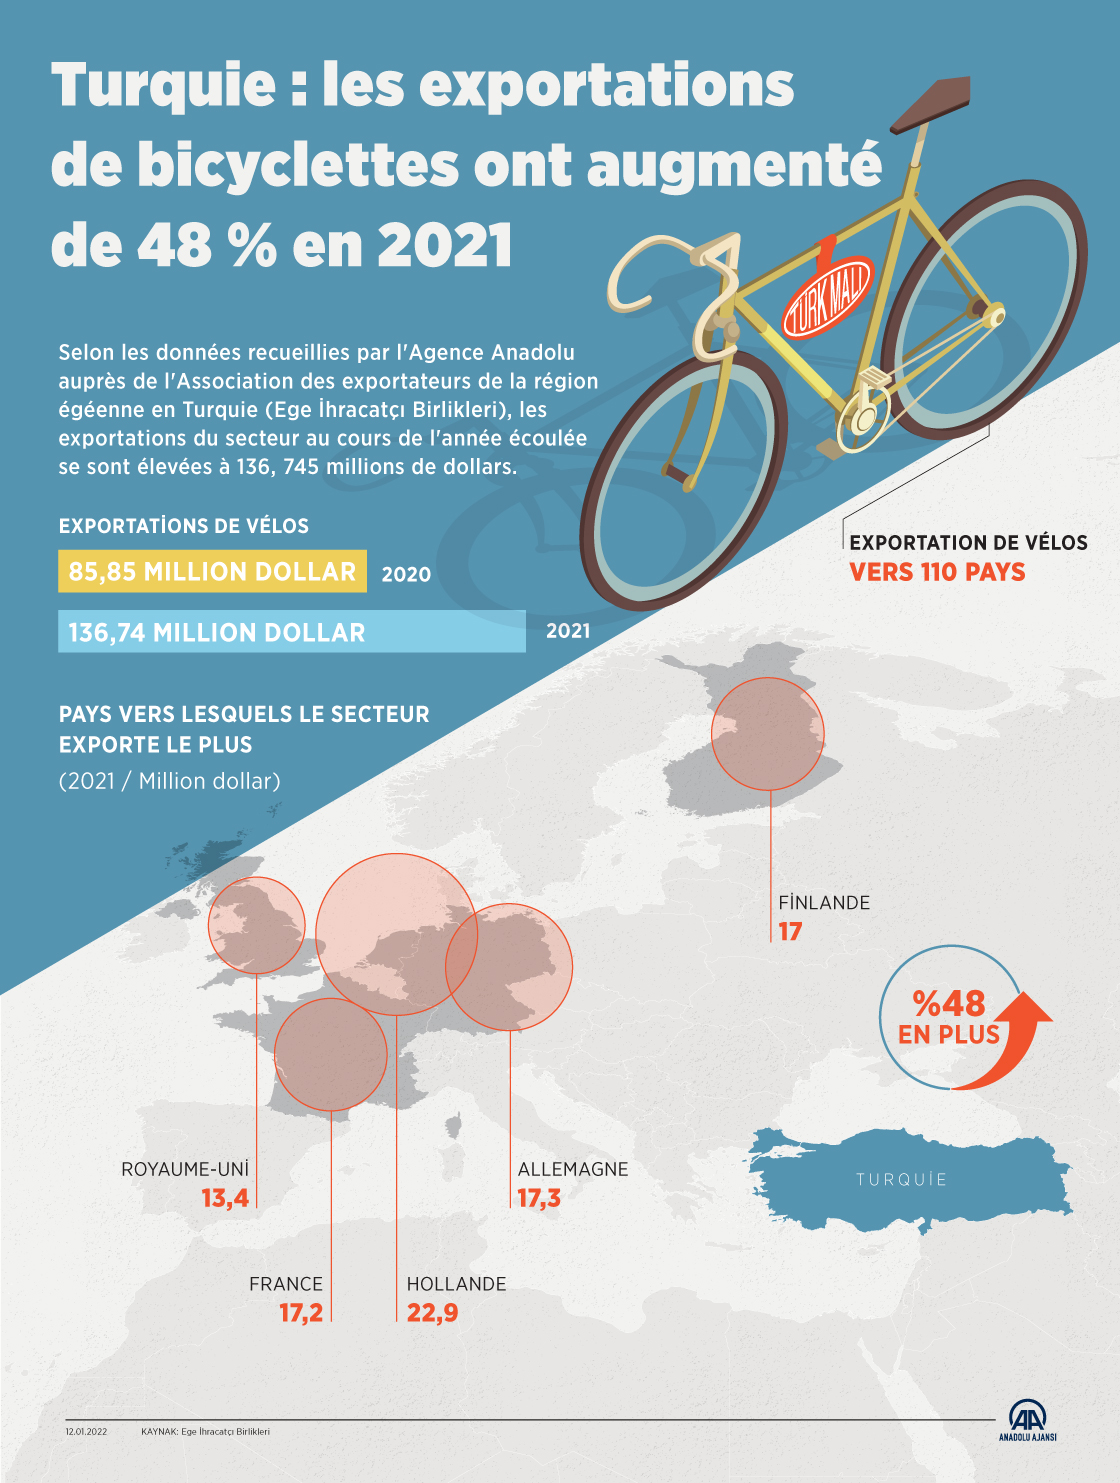 Turquie : les exportations de bicyclettes ont augmenté de 48 % en 2021